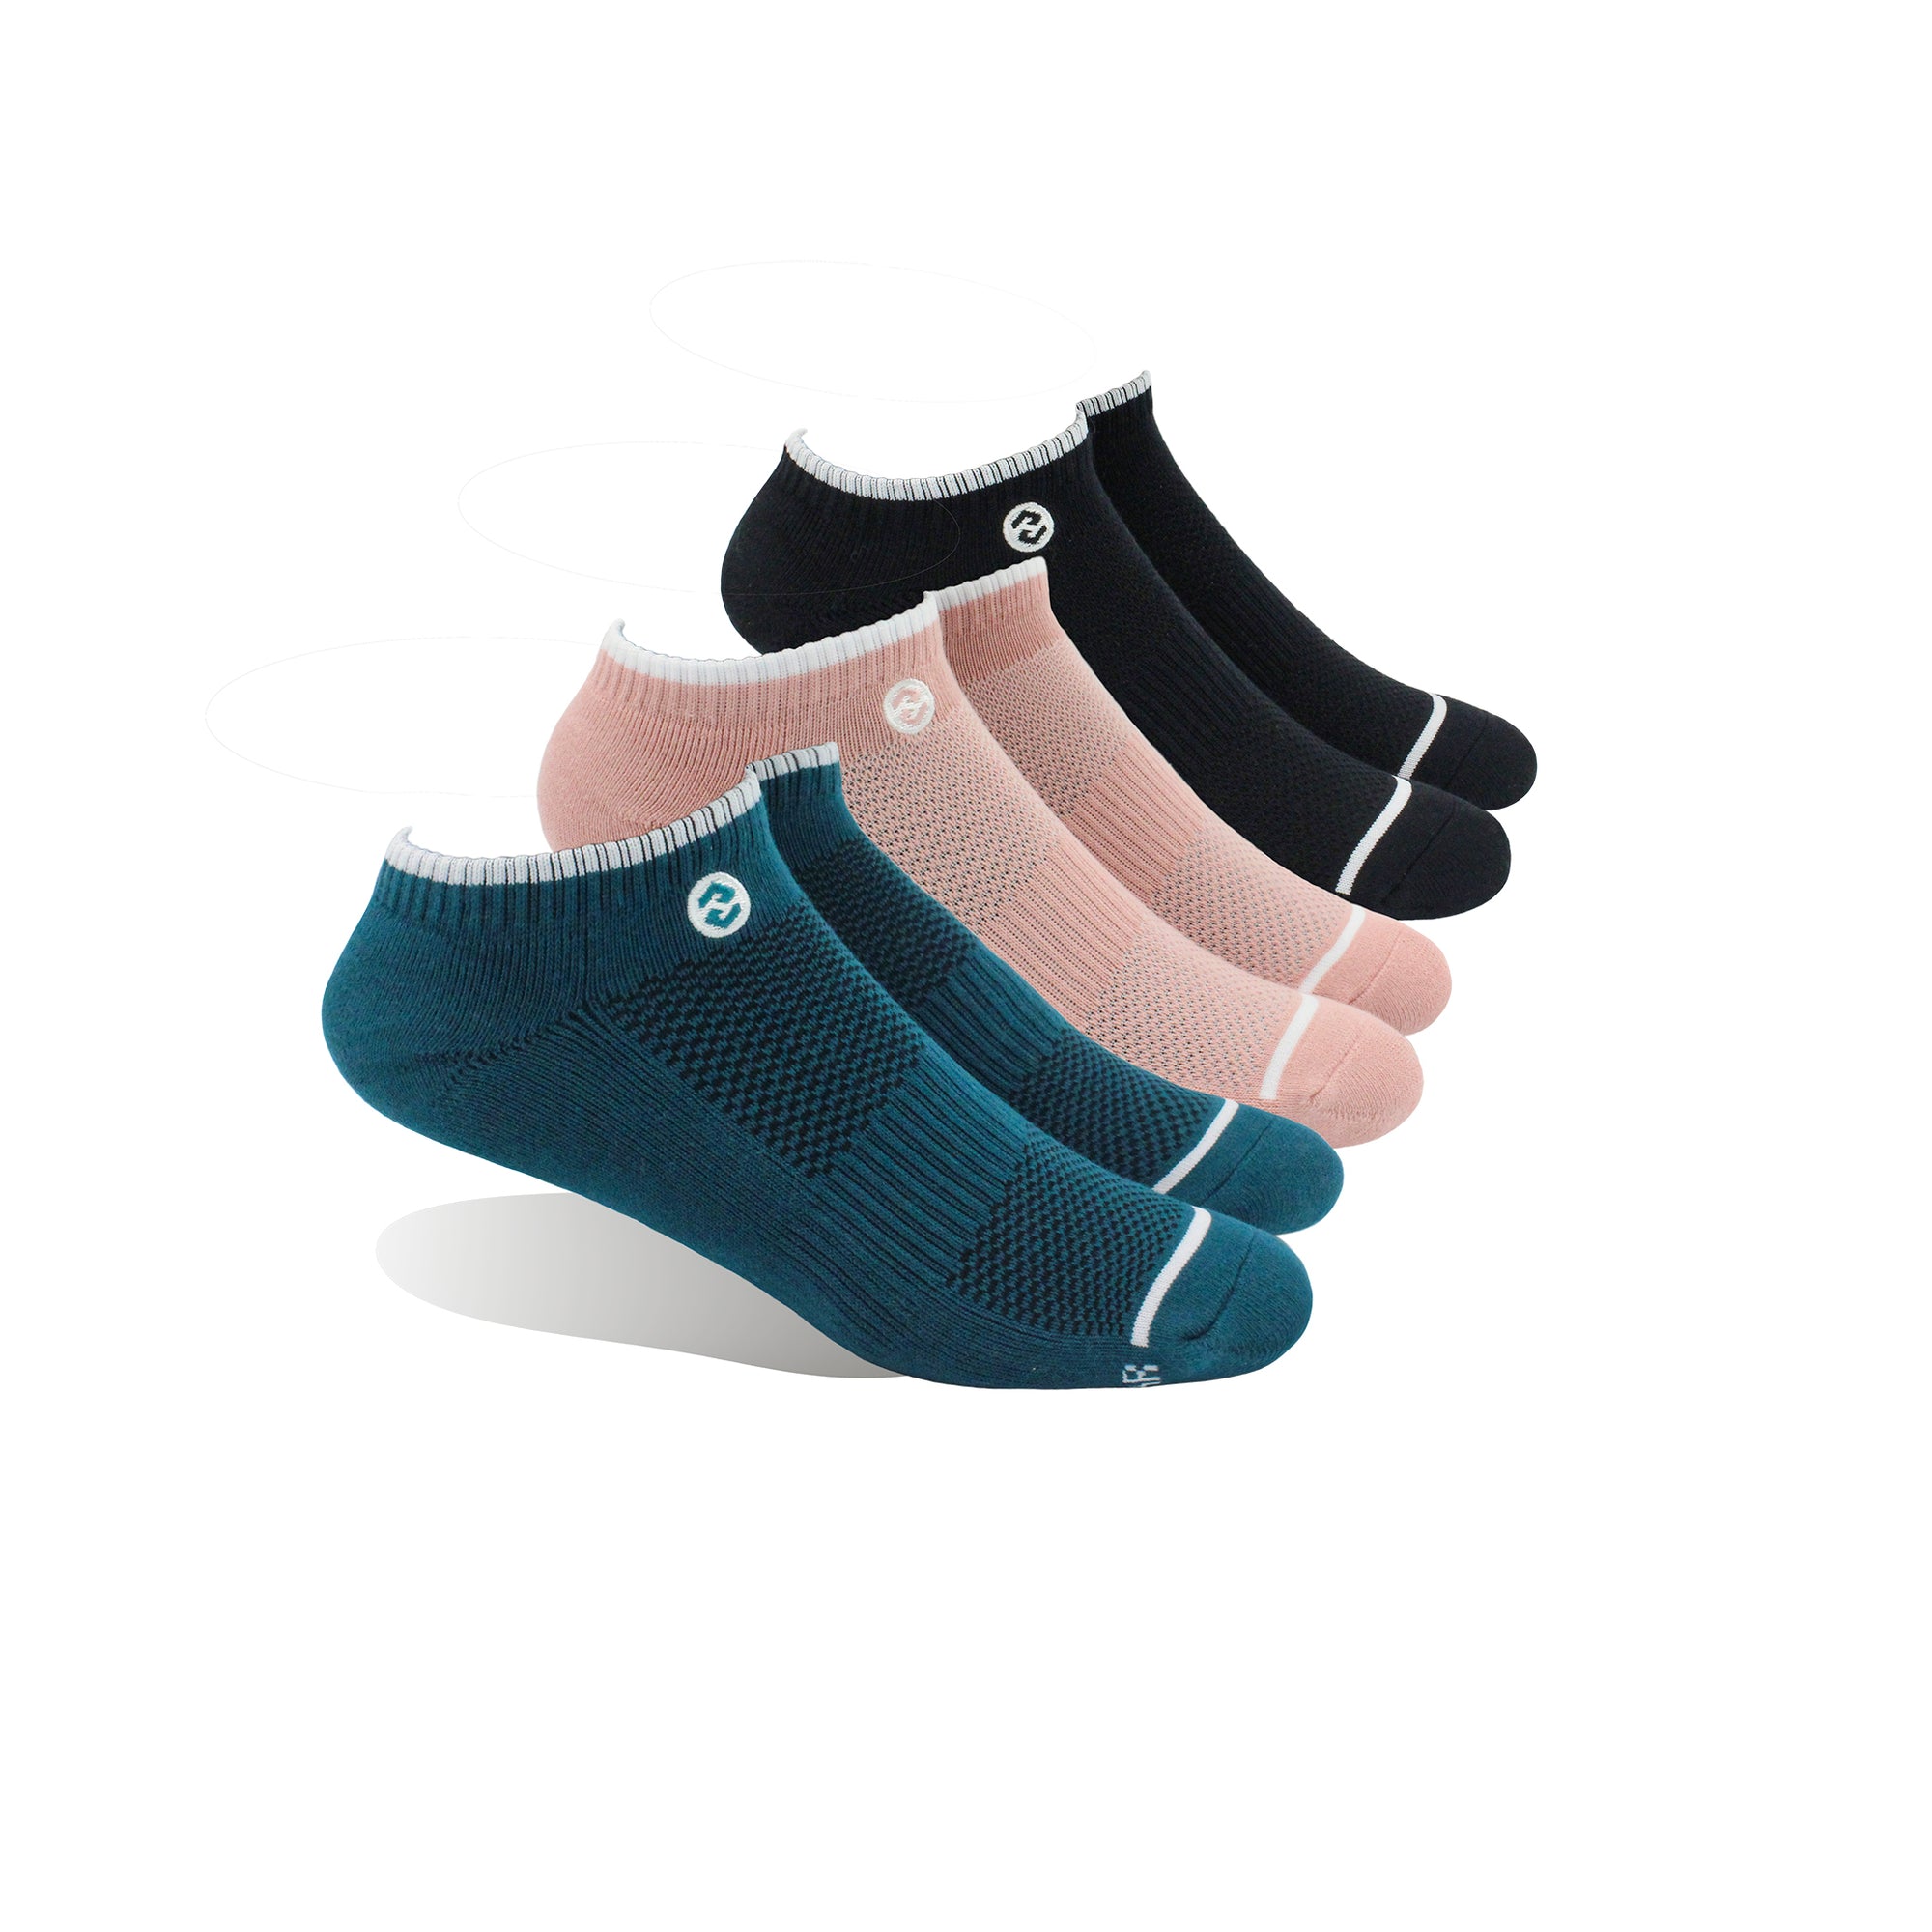 HRG Teal / Dusky Pink / Black 3 Pack Ankle Sock